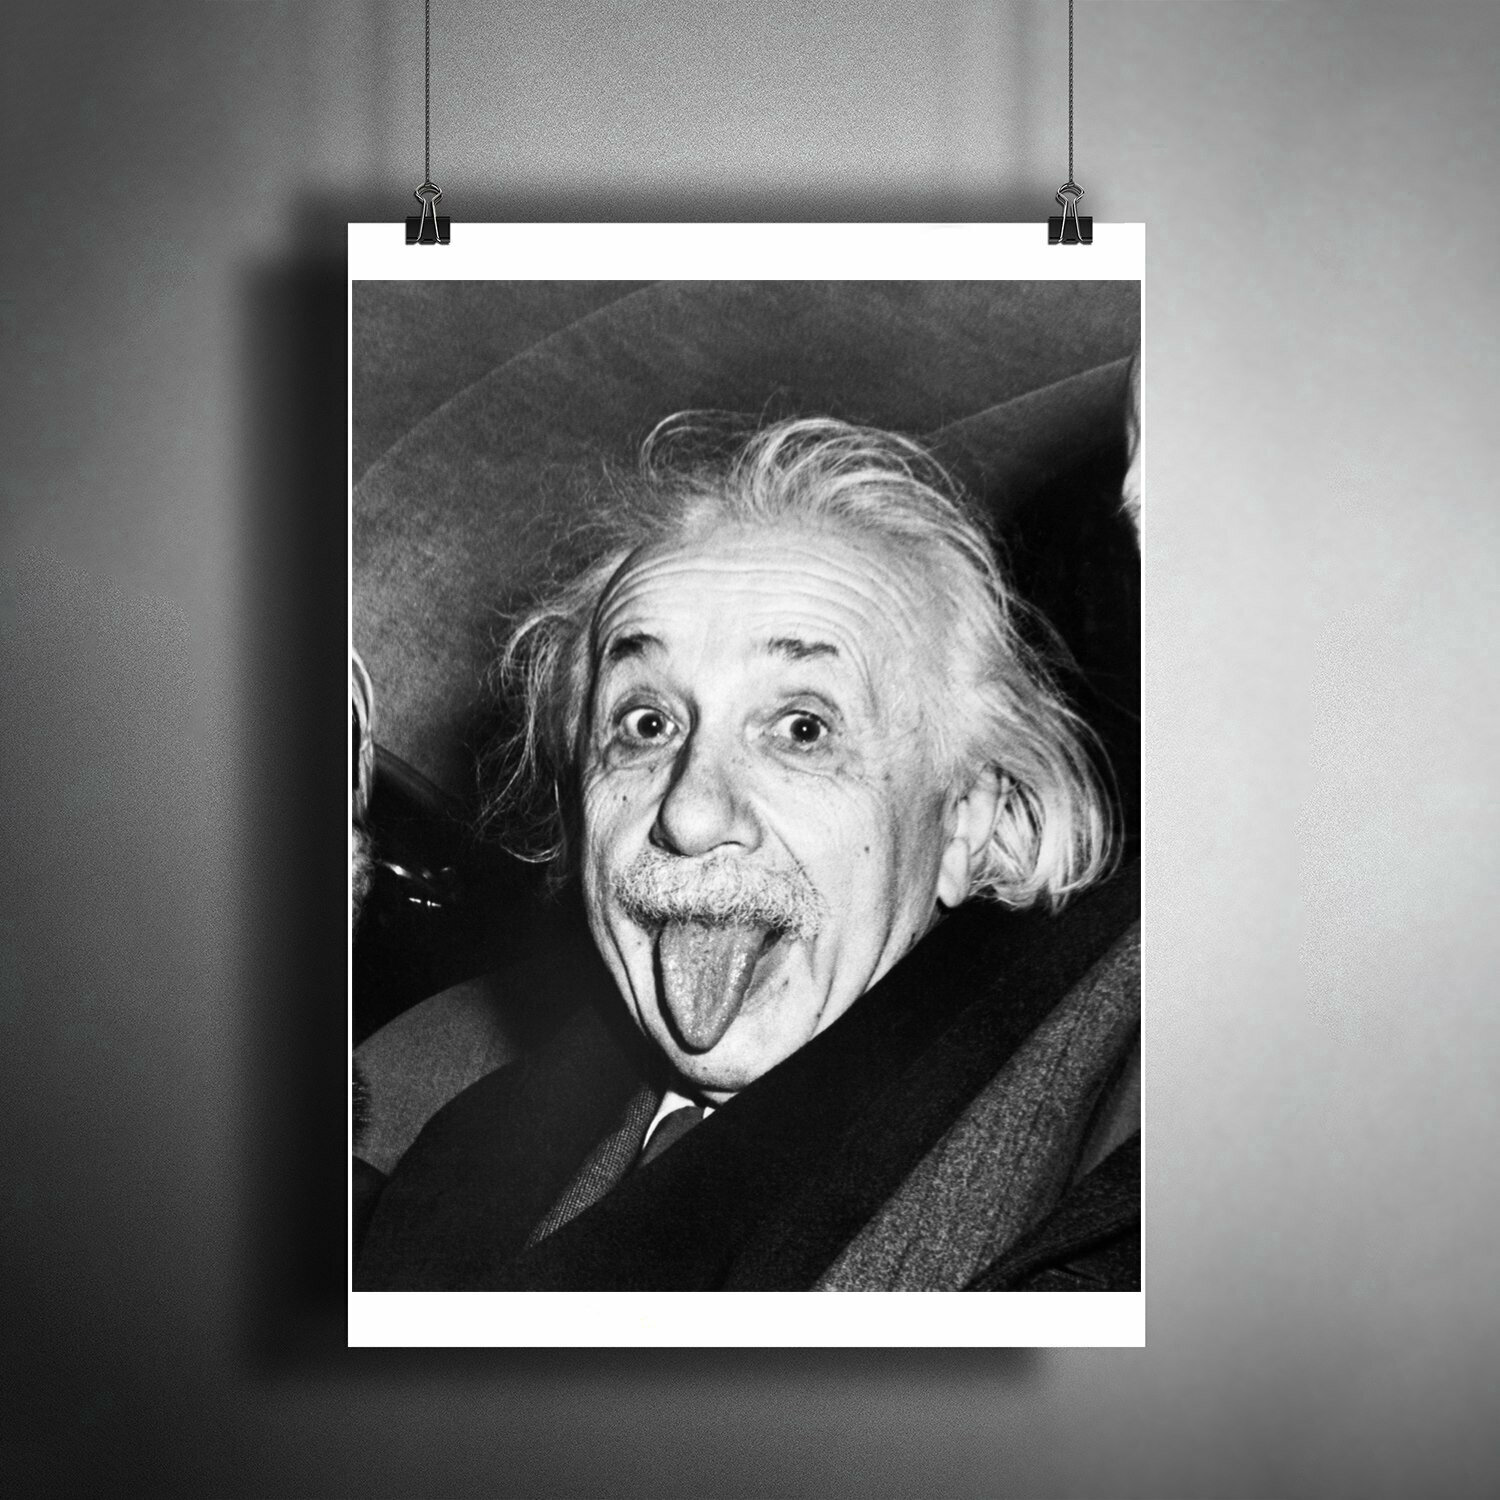 Постер плакат для интерьера "Немецкий физик-теоретик - Альберт Эйнштейн (Albert Einstein)" / Декор дома, офиса, комнаты, квартиры A3 (297 x 420 мм)